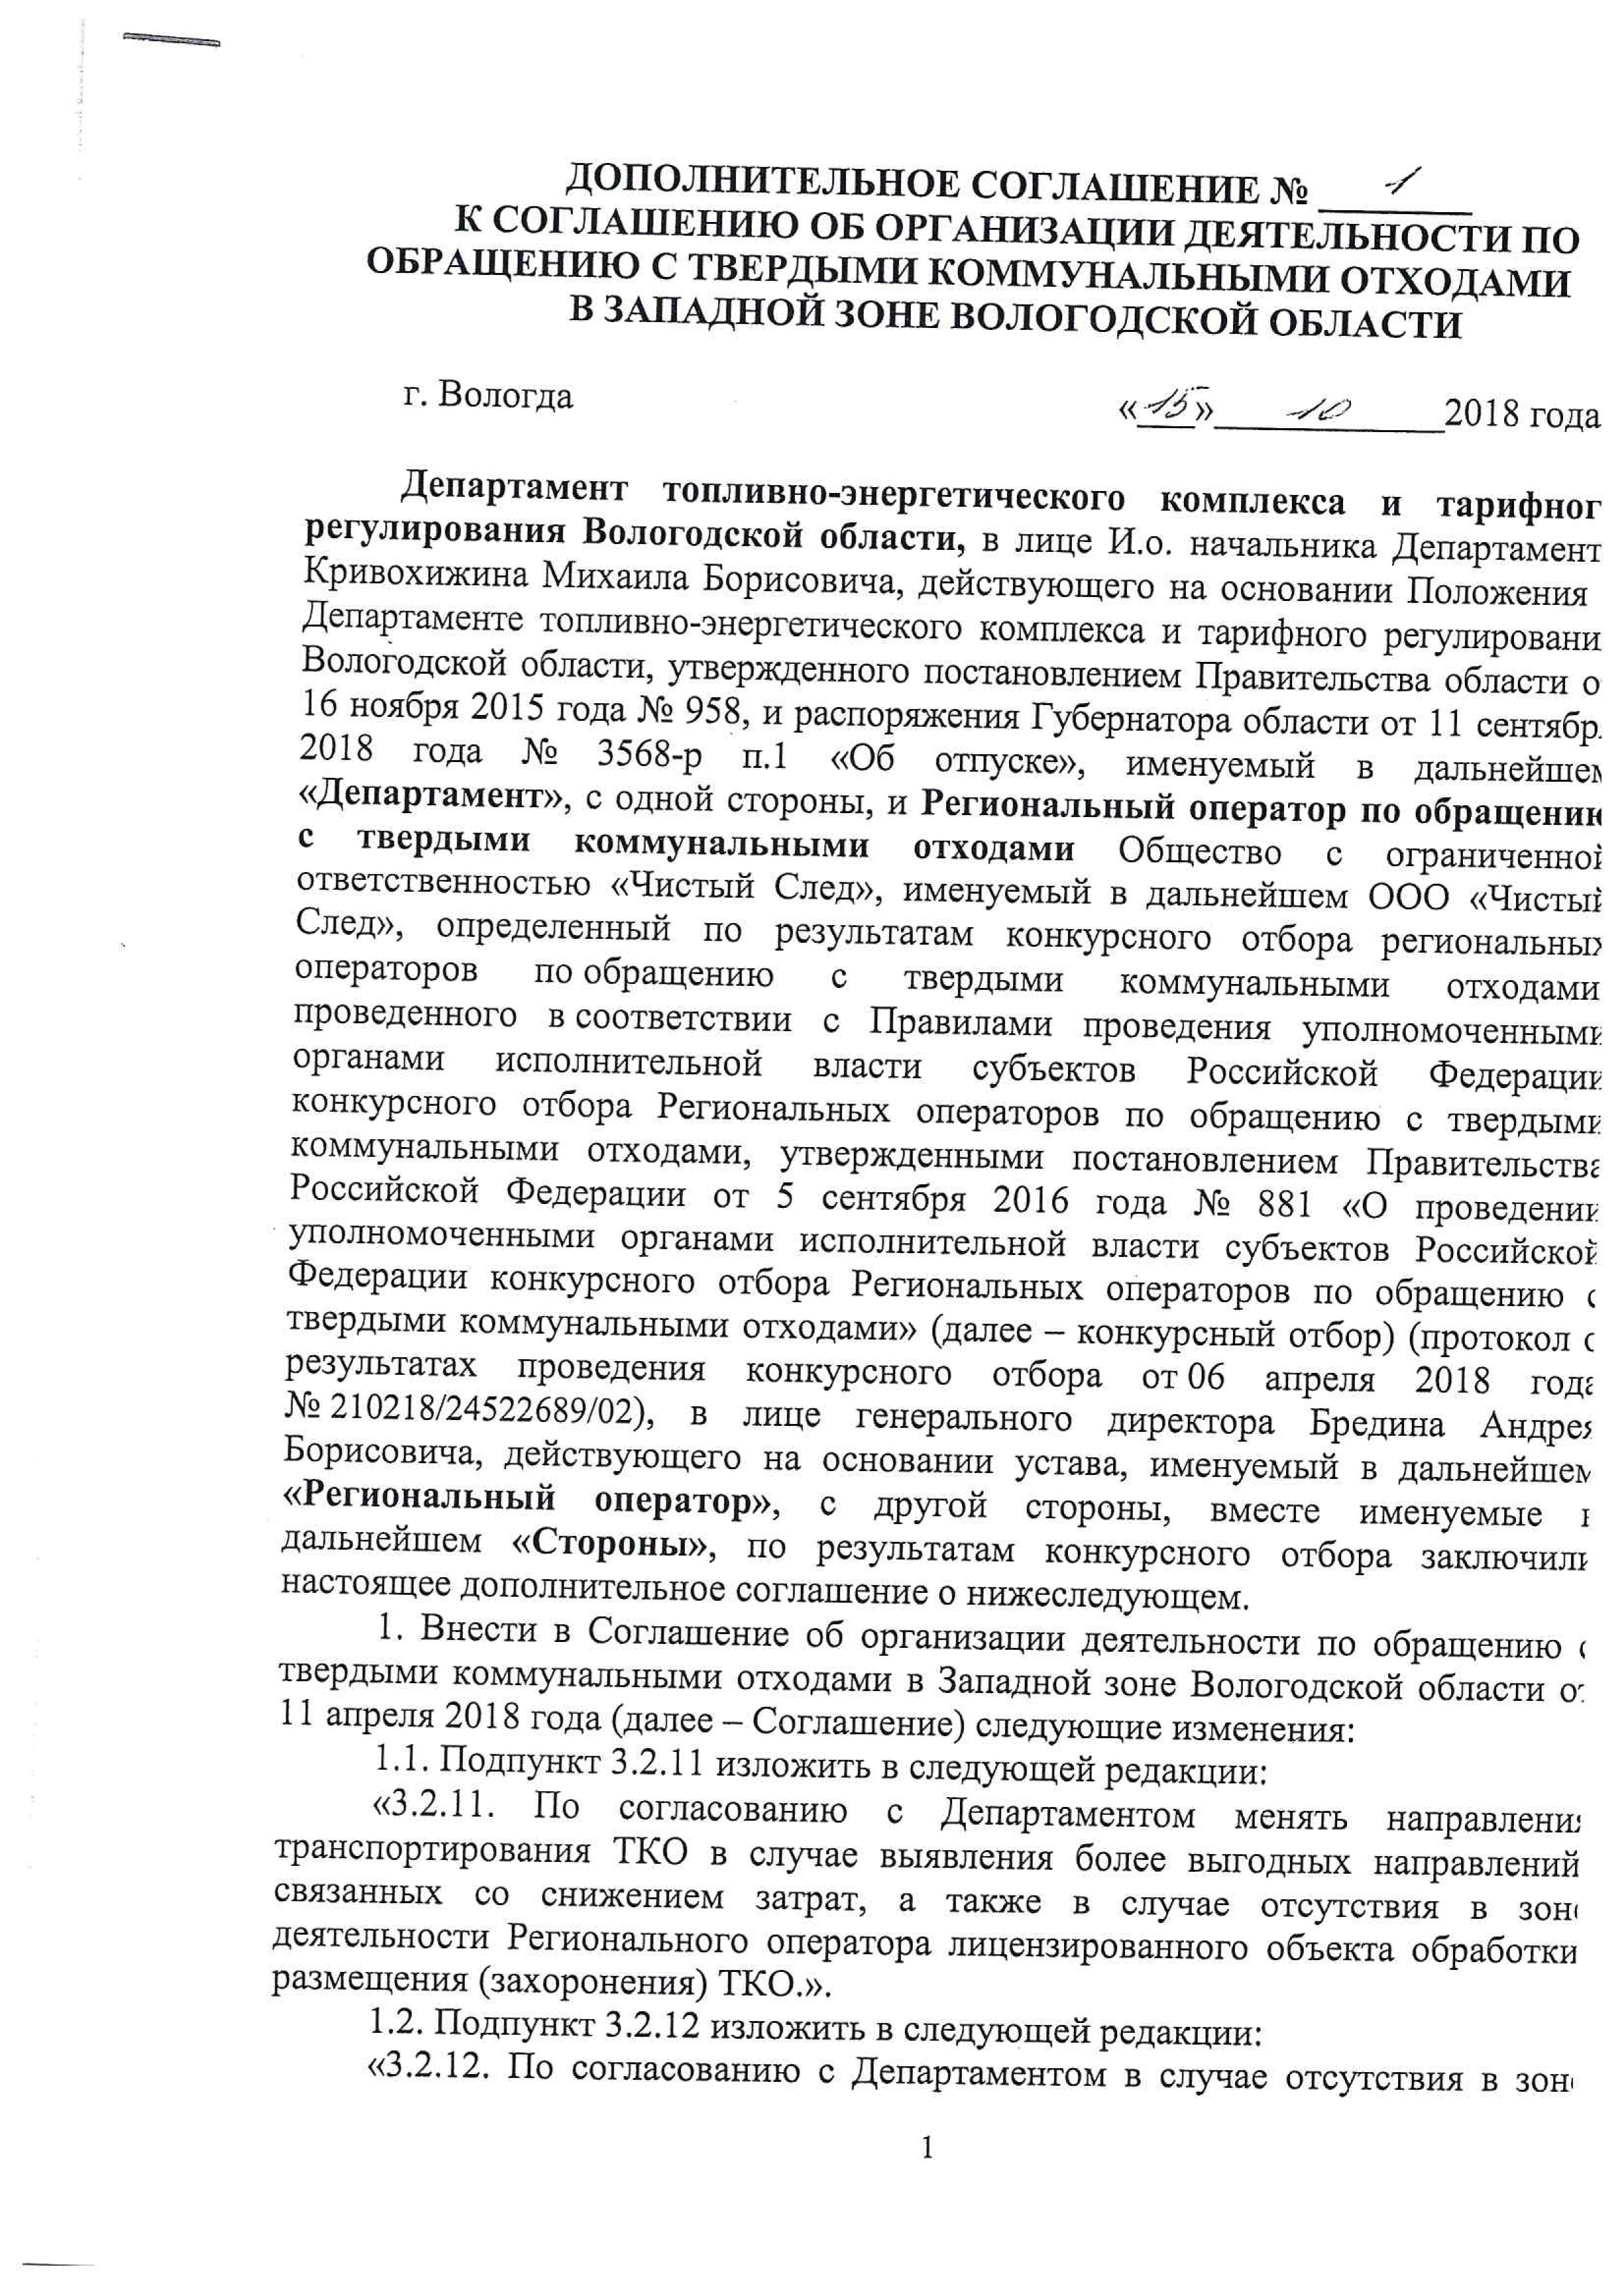 Дополнительное соглашение №1 к соглашению об организации деятельности по обращению с твердыми коммунальными отходами	
				в западной зоне Вологодской области от 15.10.2018 года